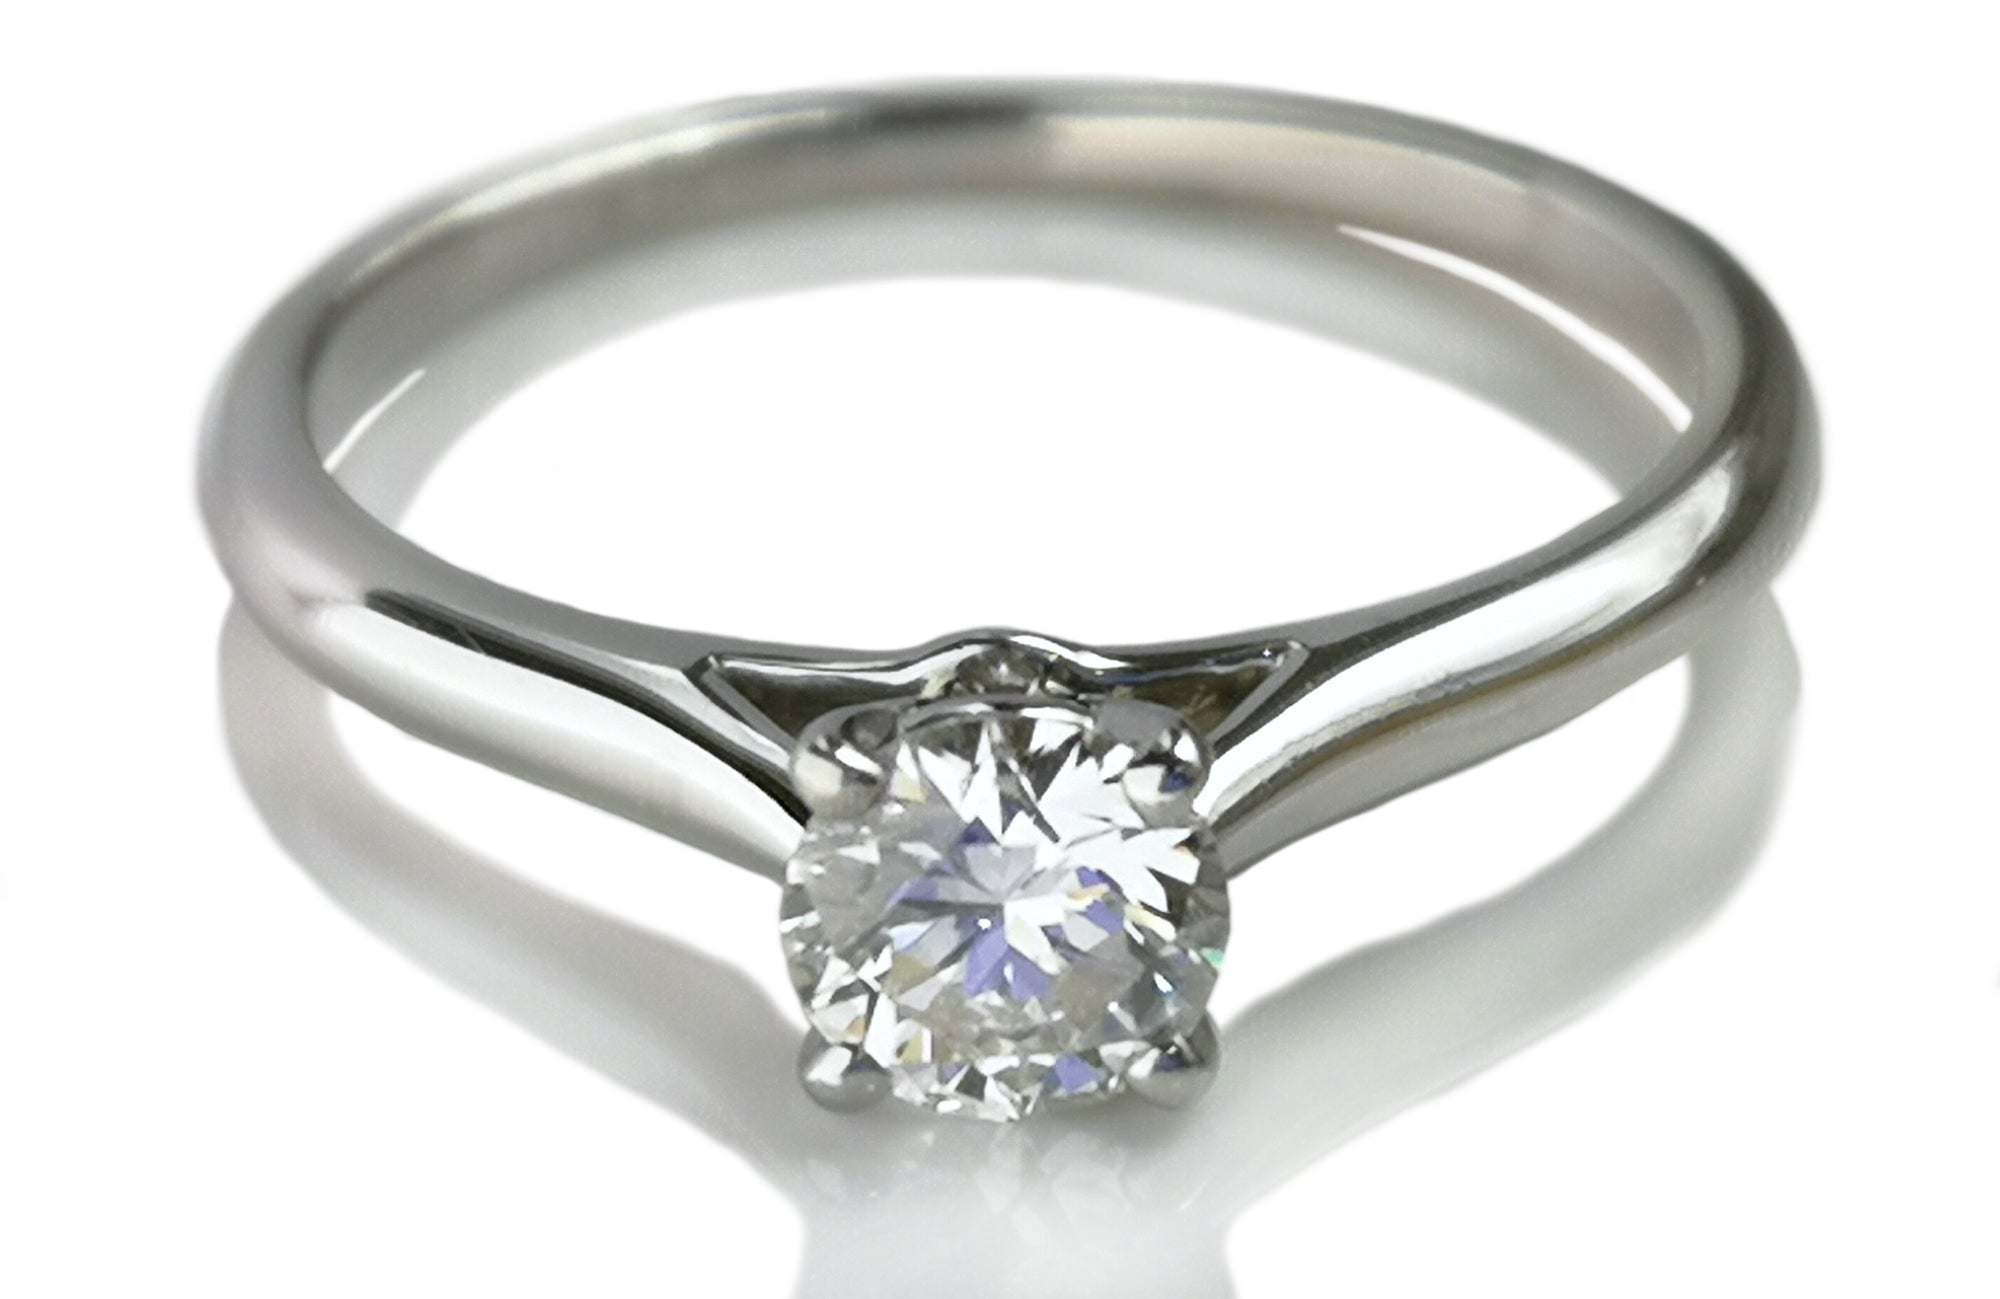 Cartier 0.40ct G/VVS1 Triple XXX 1895 Round Brilliant Diamond Engagement Ring